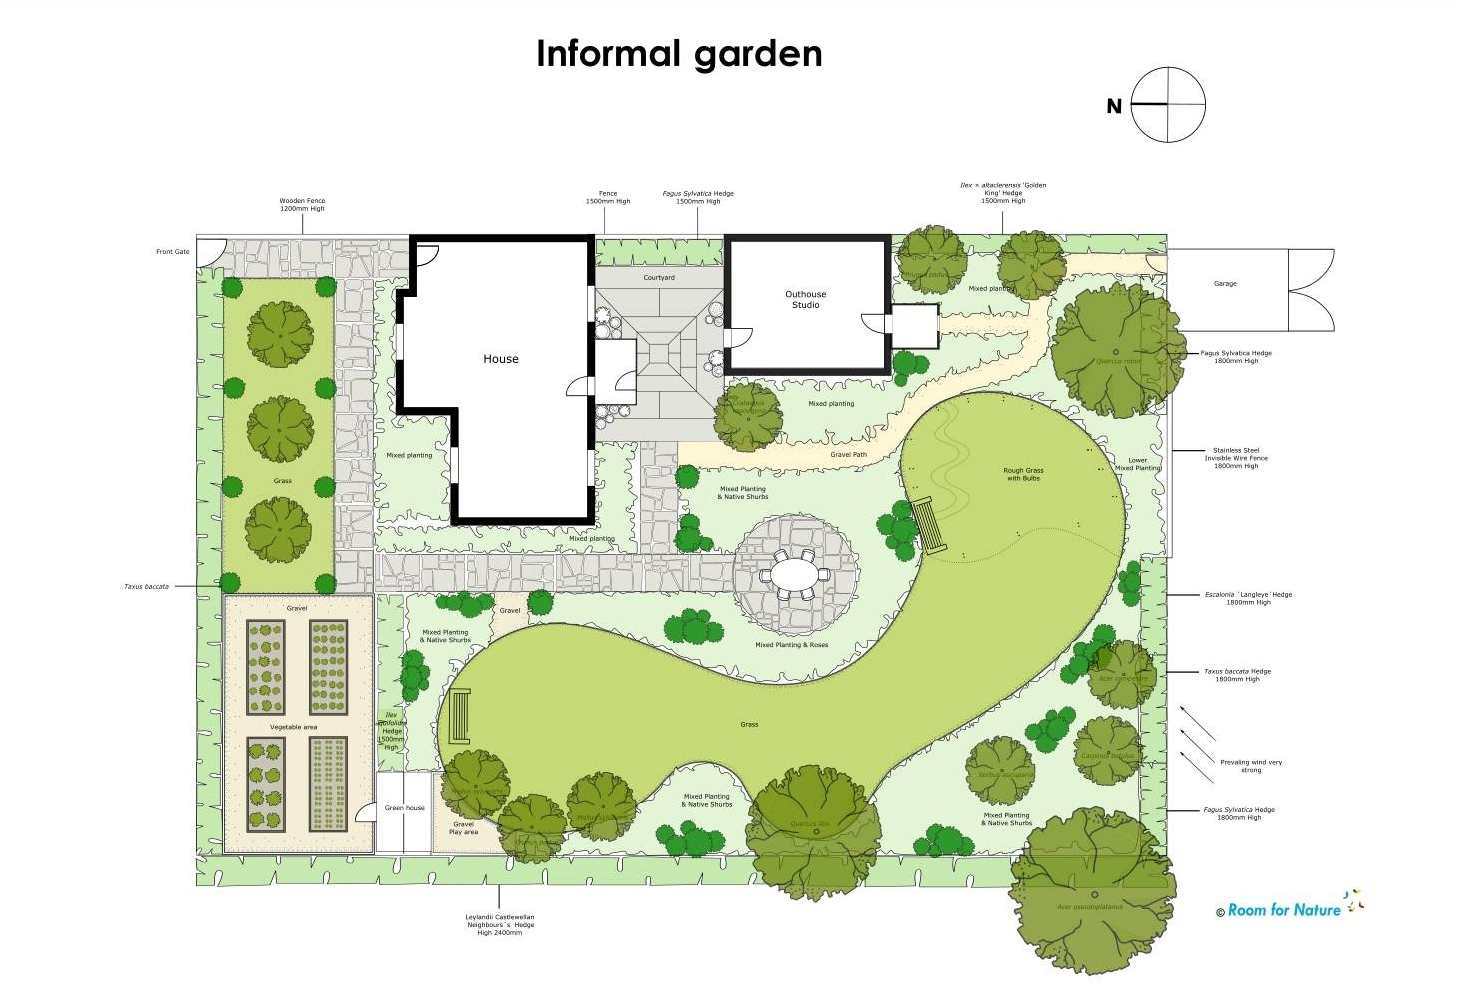 a2-informal-garden-scale-1.100